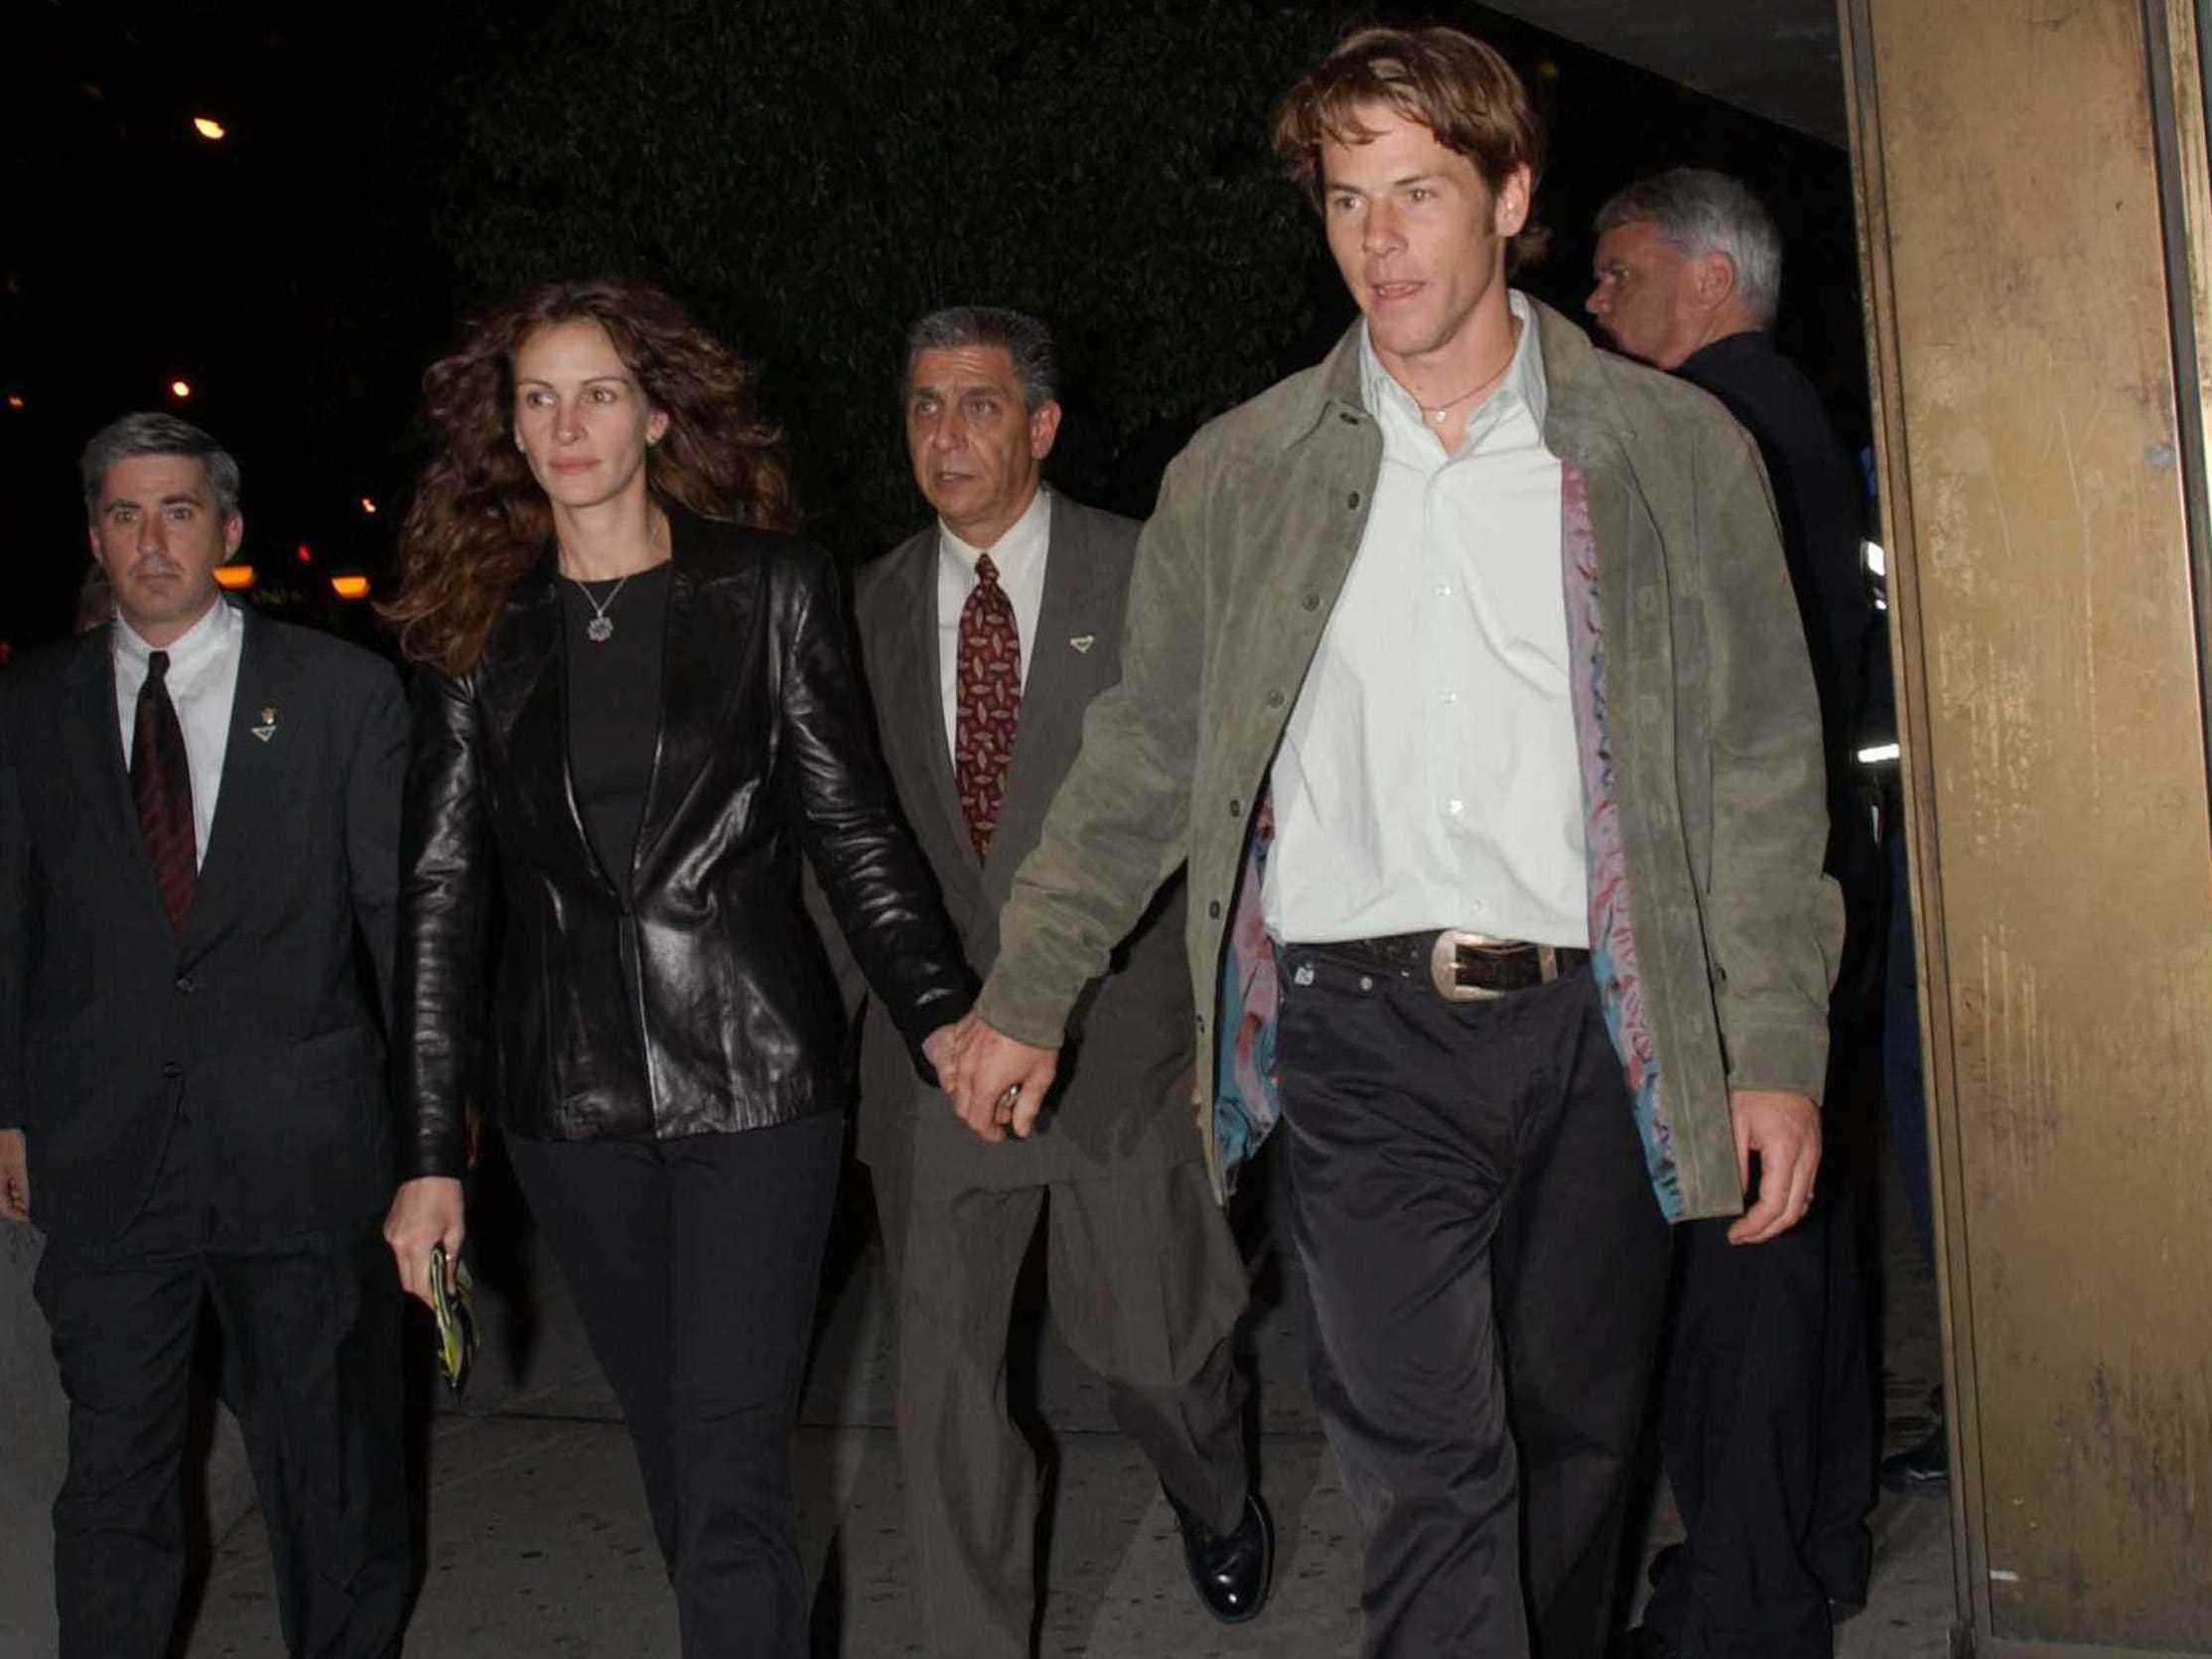 Auf diesem Foto aus dem Jahr 2002 kommt Julia Roberts in einem komplett schwarzen Outfit aus einer Filmvorführung und hält Händchen mit Ehemann Danny Moder, der eine graue Jacke, ein weißes Hemd und eine braune Hose trägt.